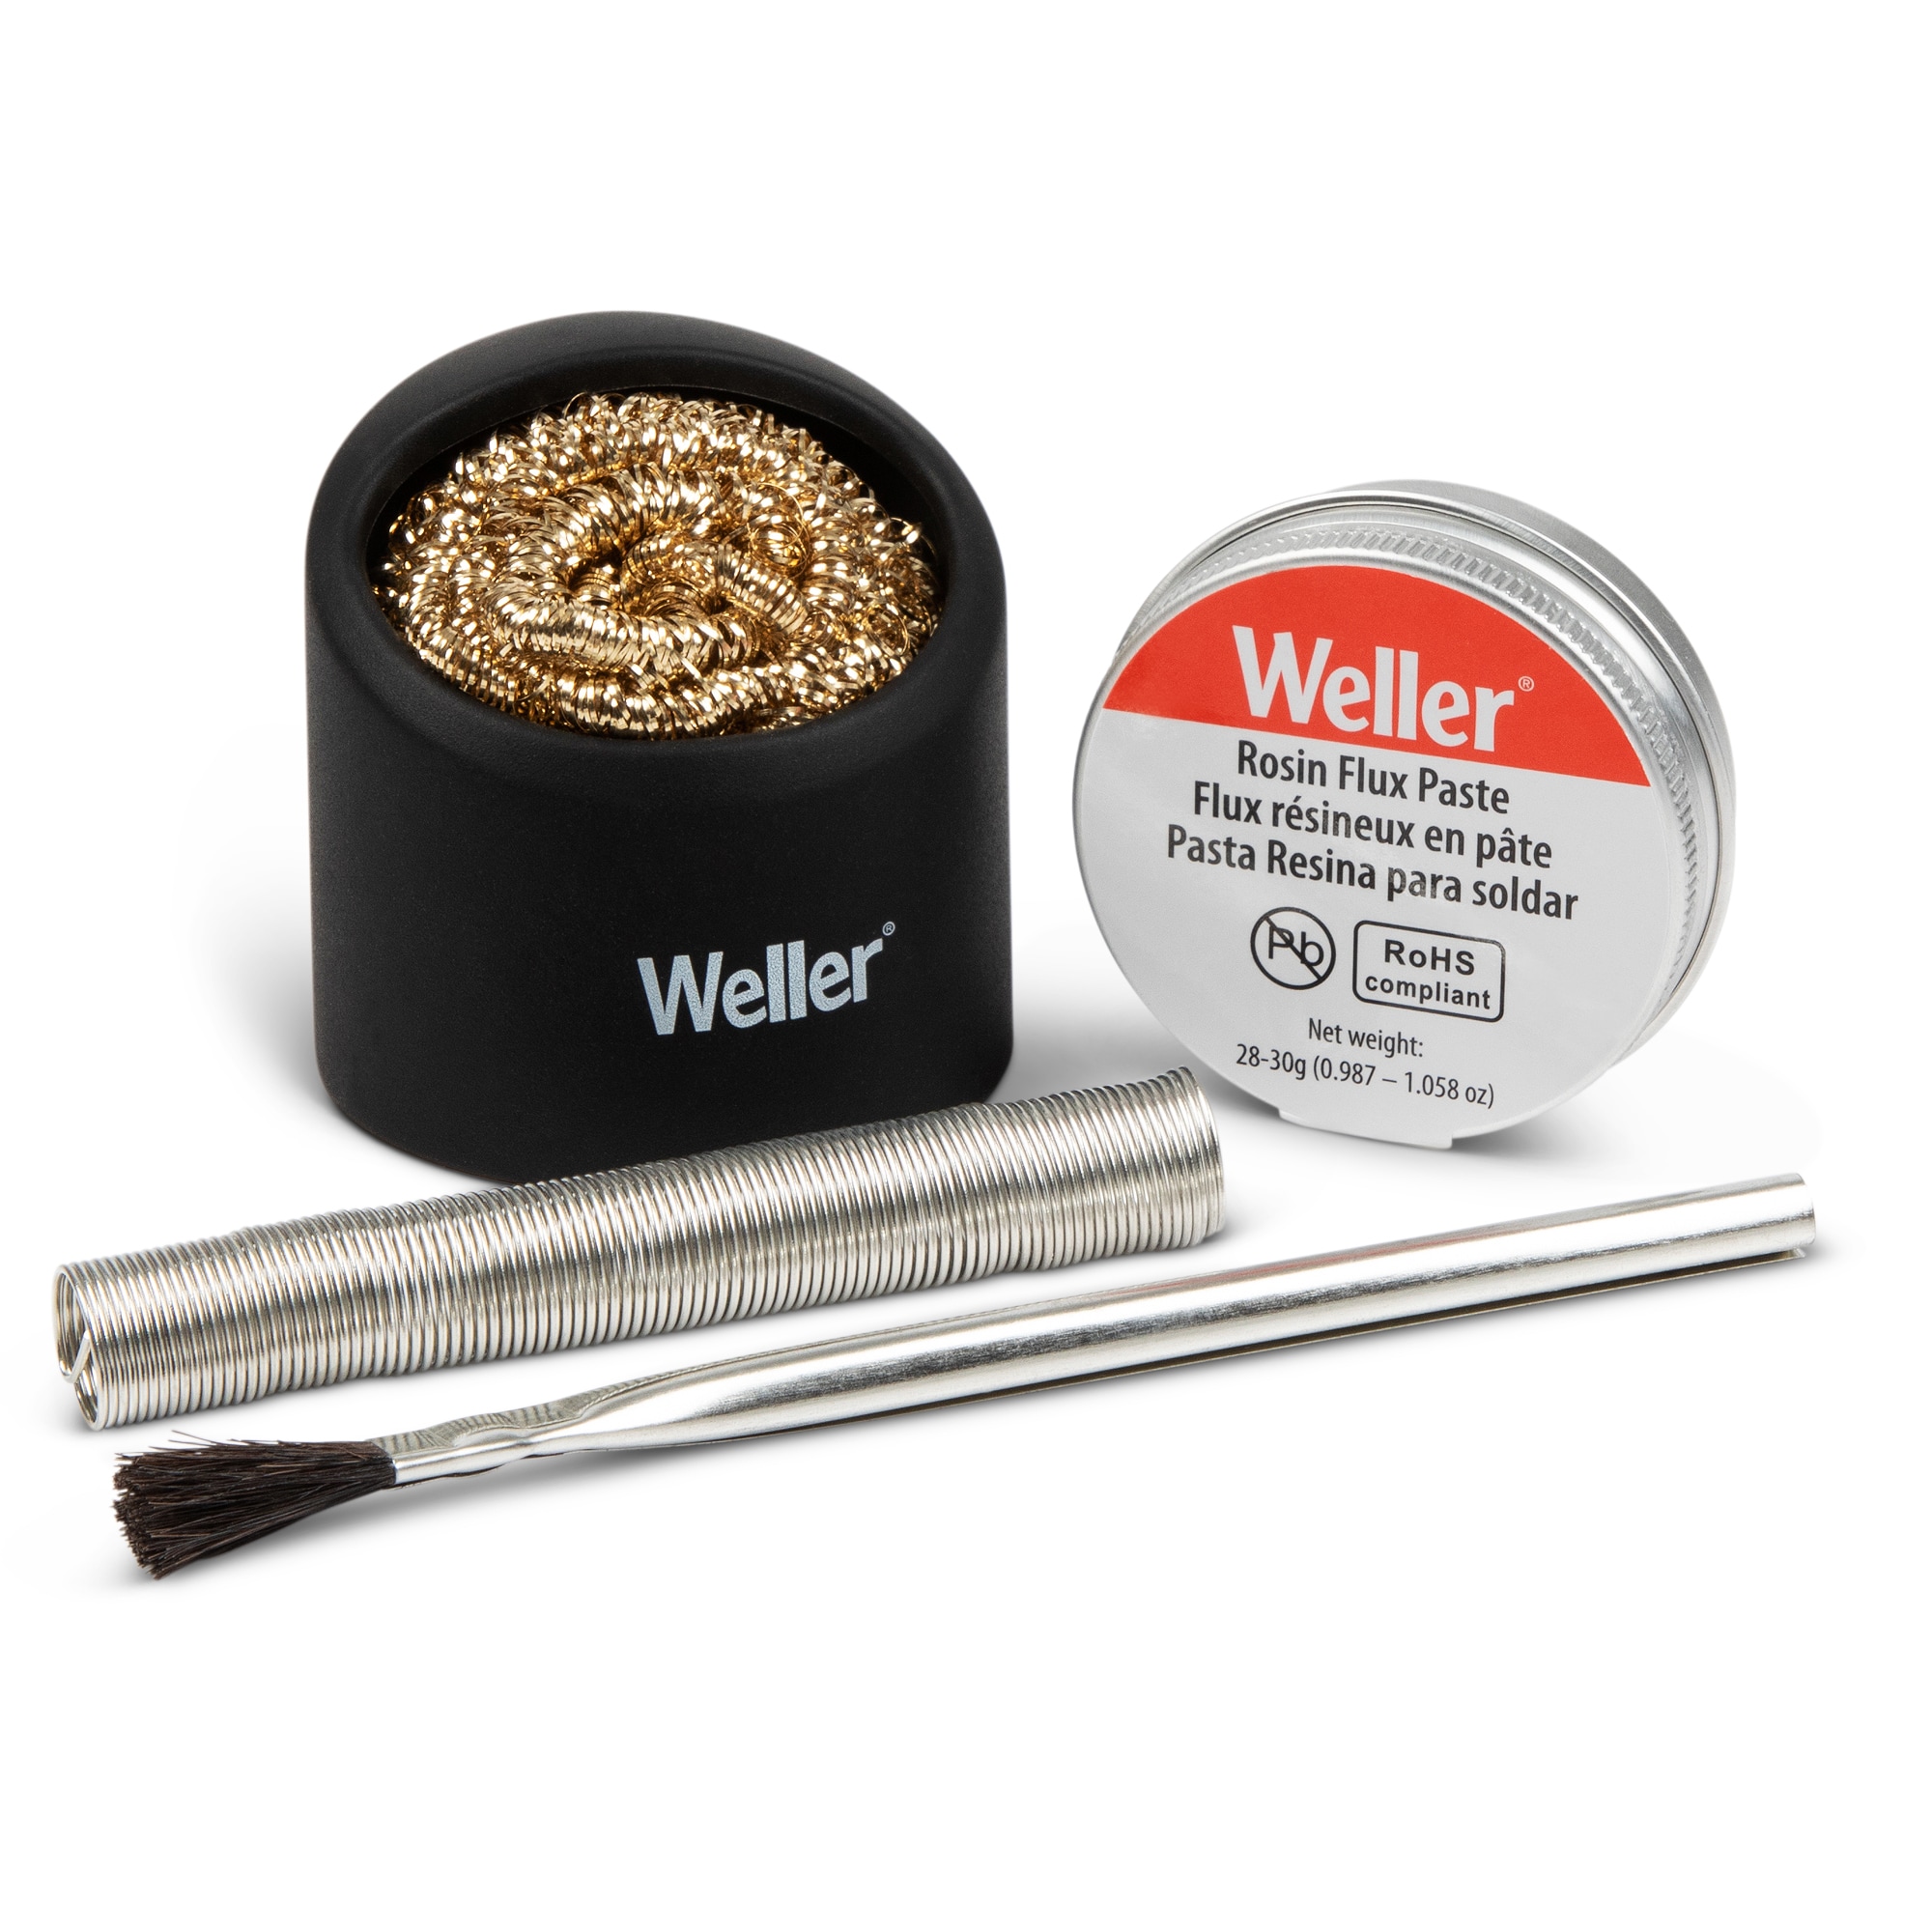 Buy Weller WLACCFB-02 Flux brush